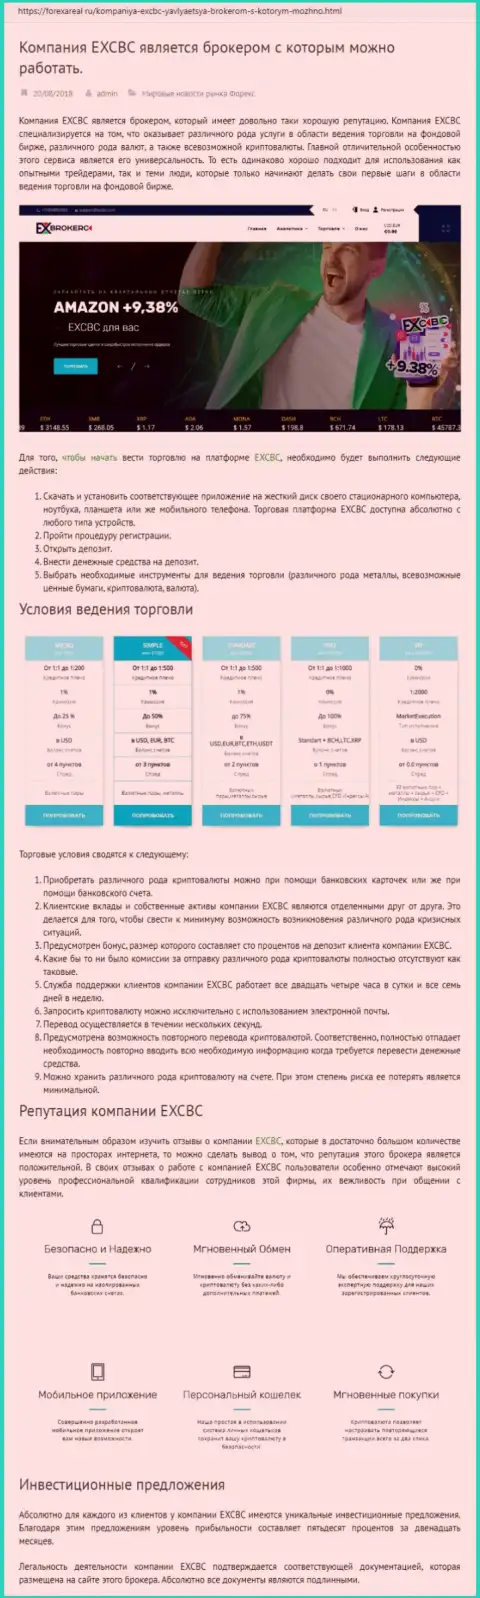 Сайт forexareal ru опубликовал разбор деятельности ФОРЕКС дилера EXBrokerc